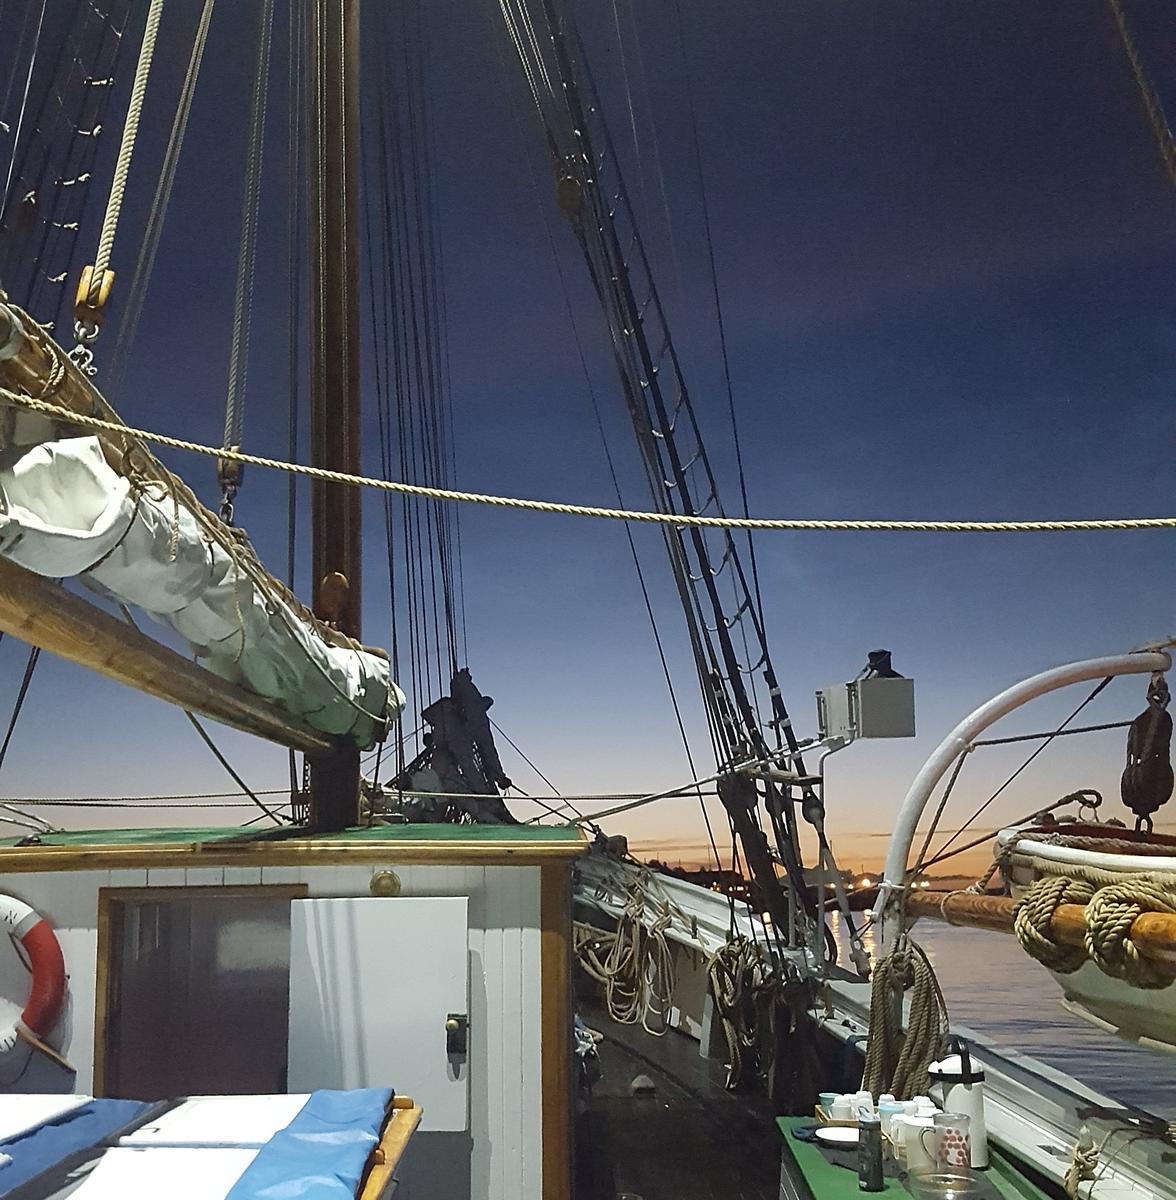 Detalj av skonnerten "Svanen", mast med rigg, detalj av livbåt, mørkeblå himmel. (Foto/Photo)